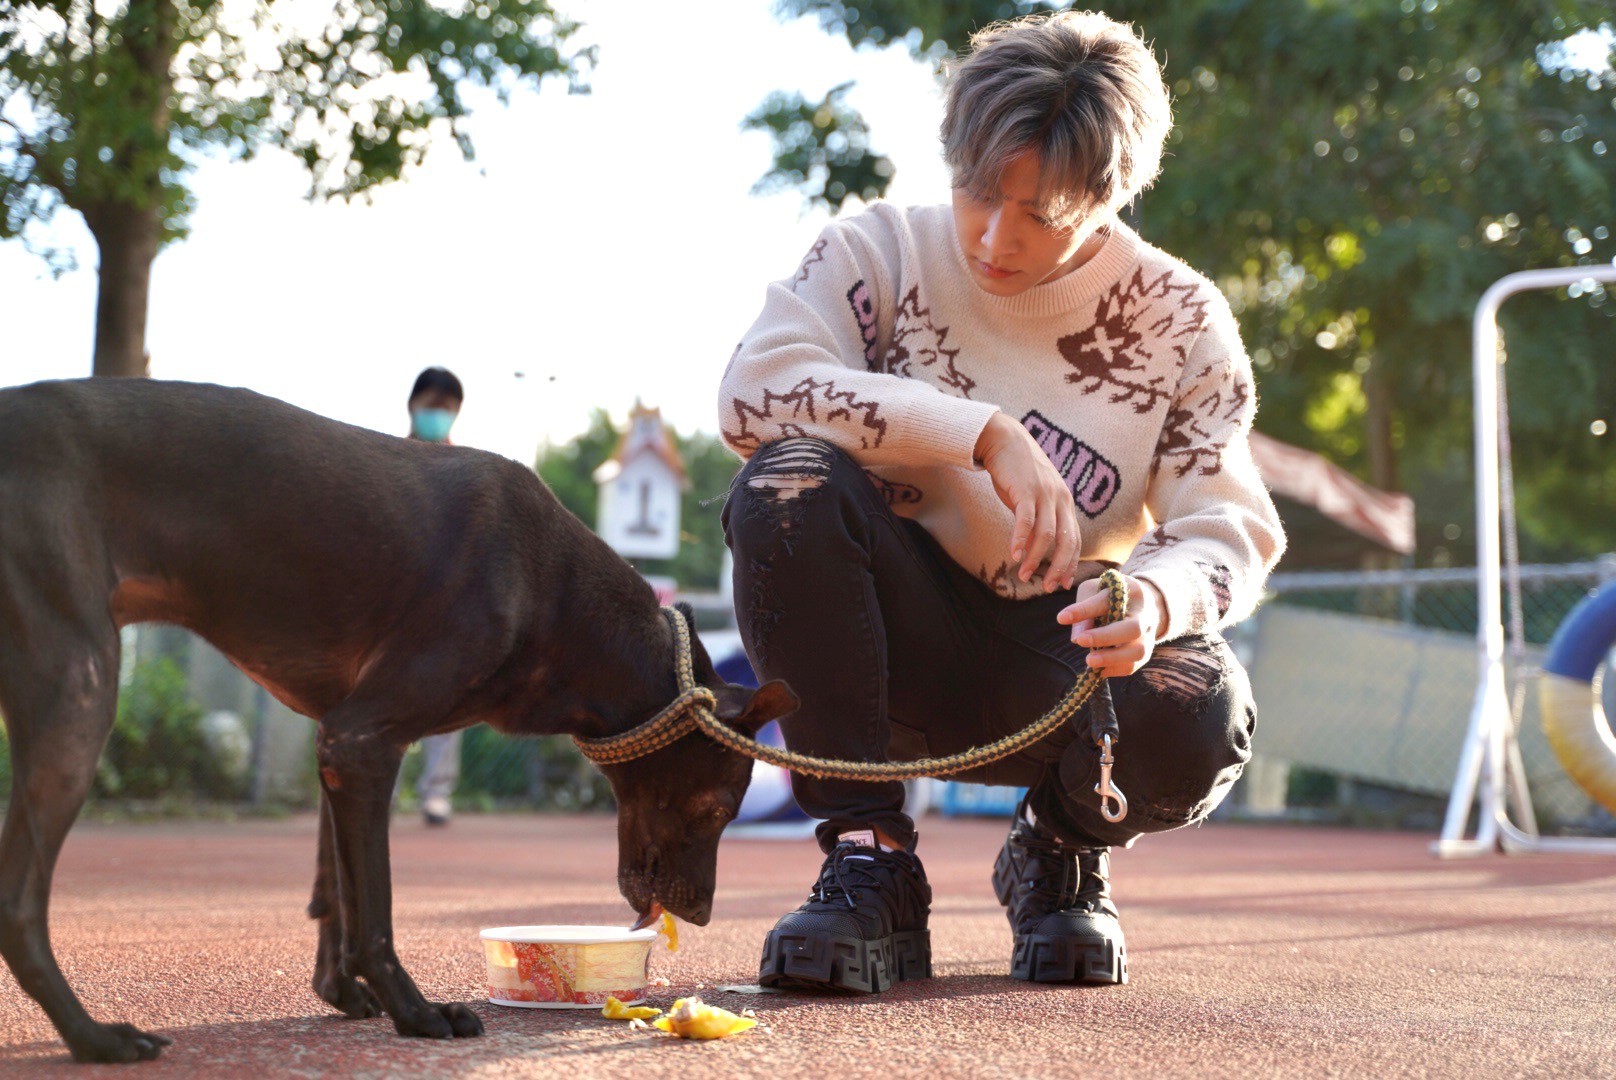 炎亞綸展示犬隻出入公共場所時要牽著他們。